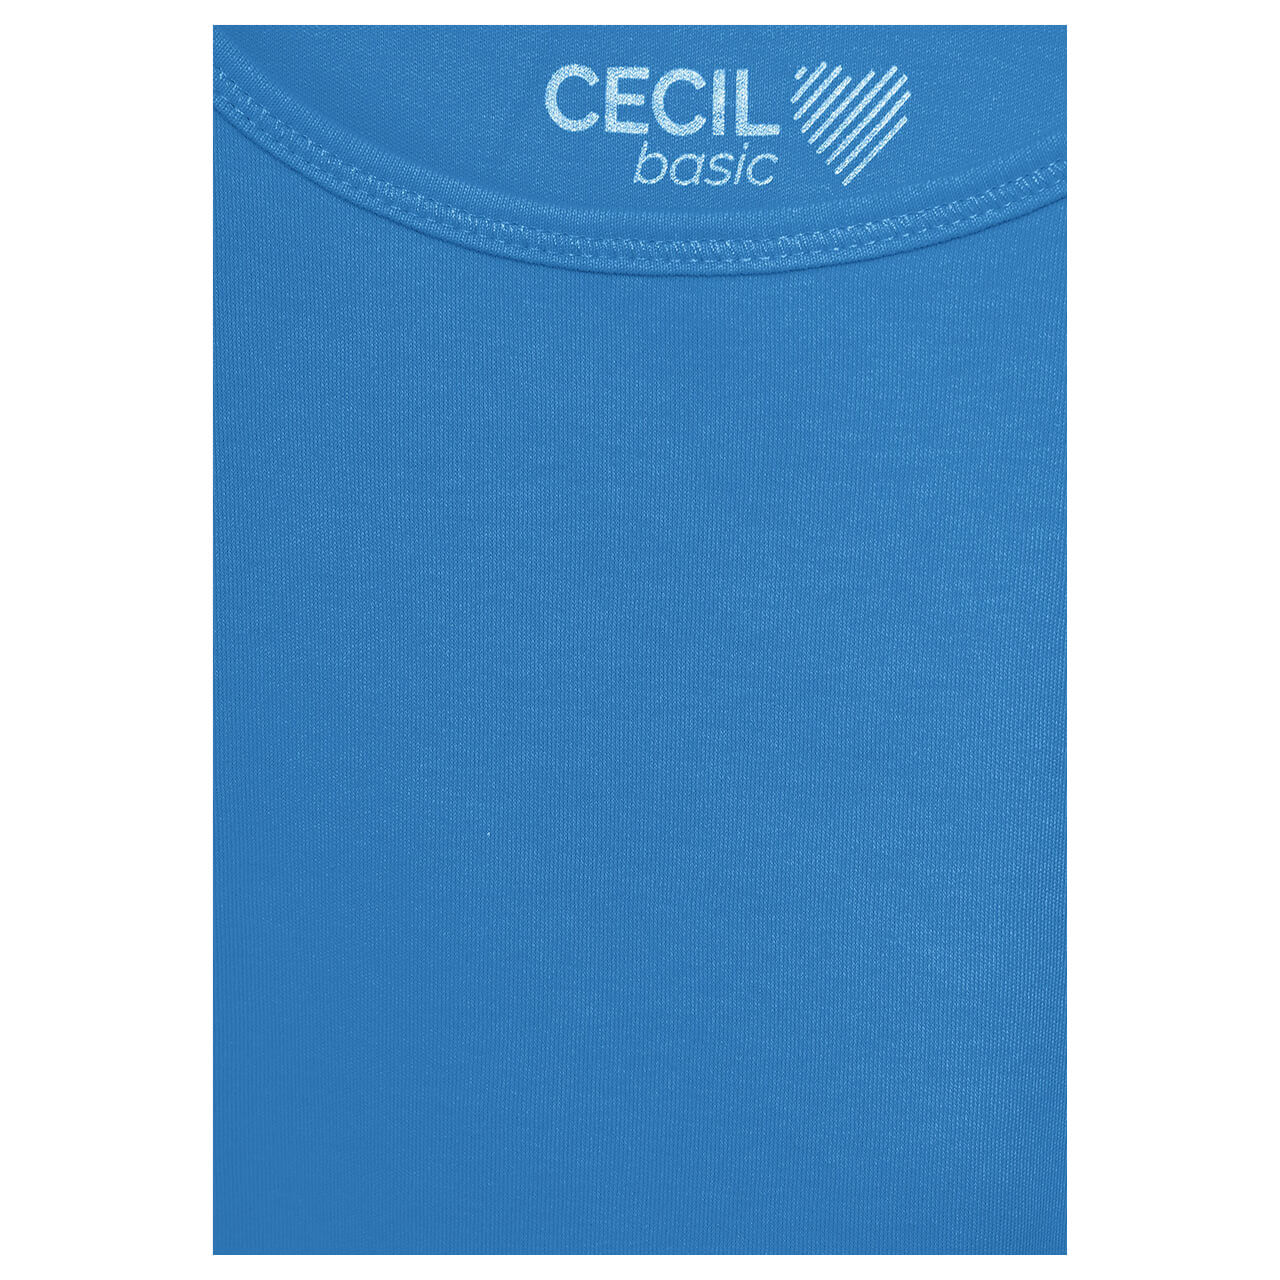 Cecil Damen Top Linda azure blue